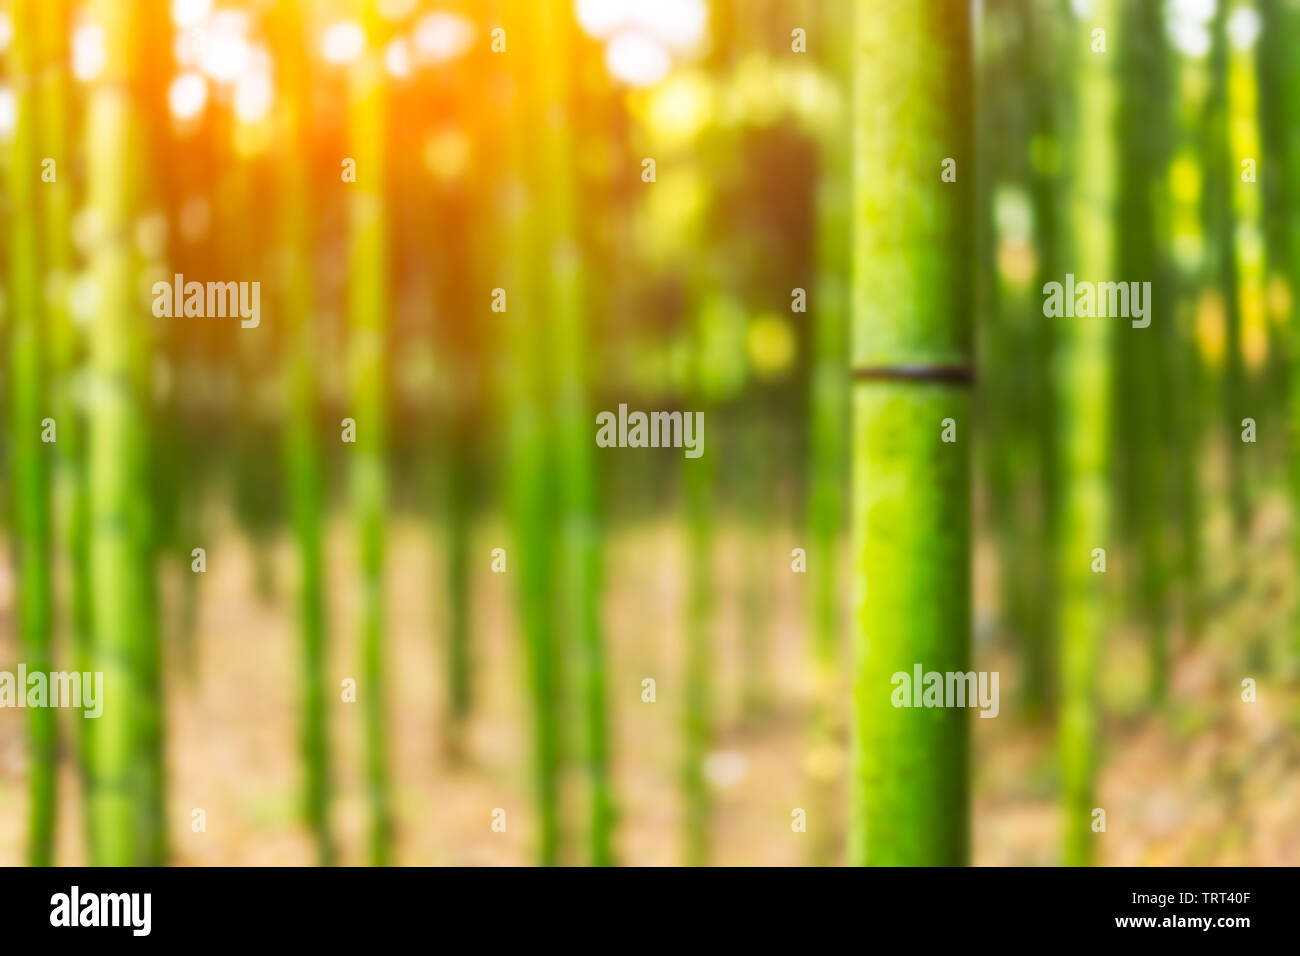 Blur giapponese foresta di bambù per lo sfondo Foto Stock